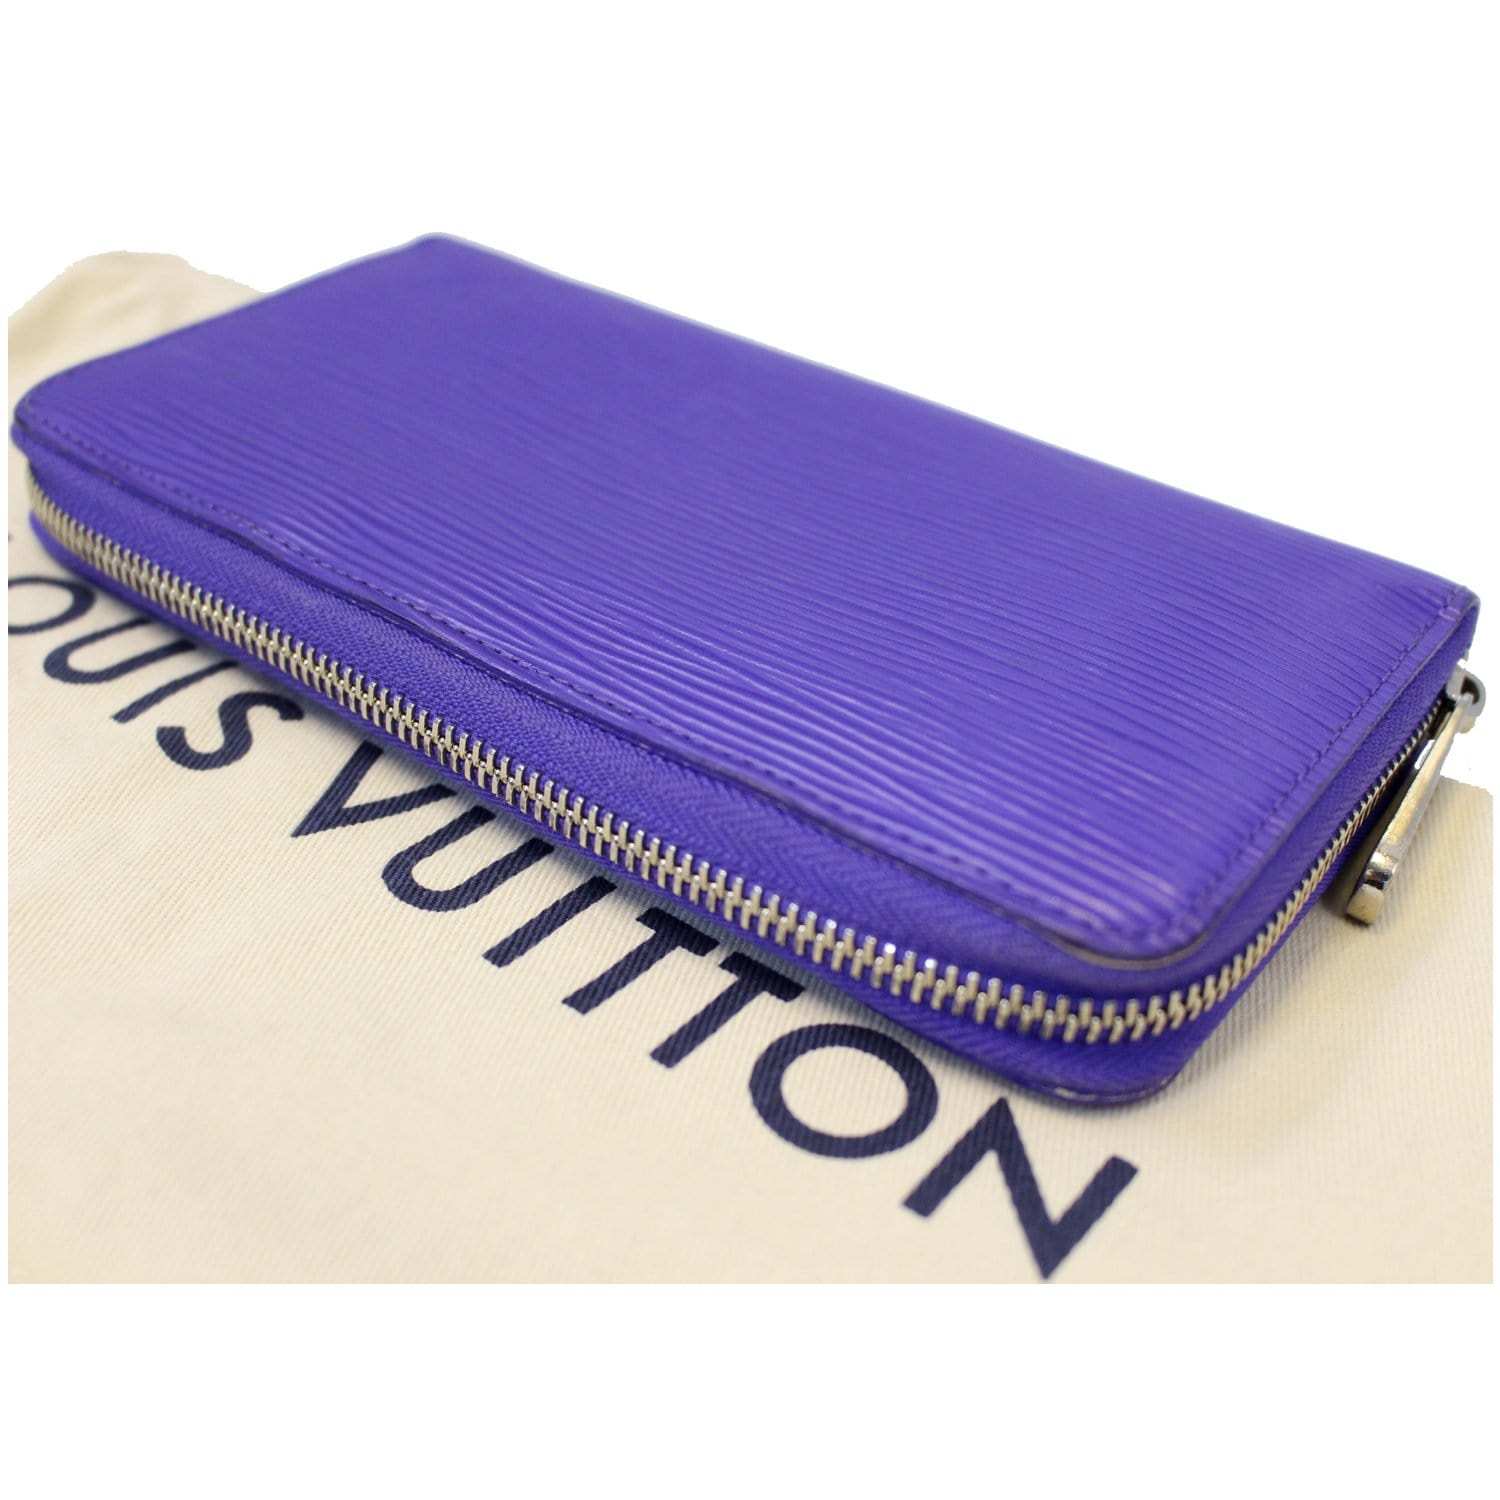 Louis Vuitton Womens Folding Wallets, Purple